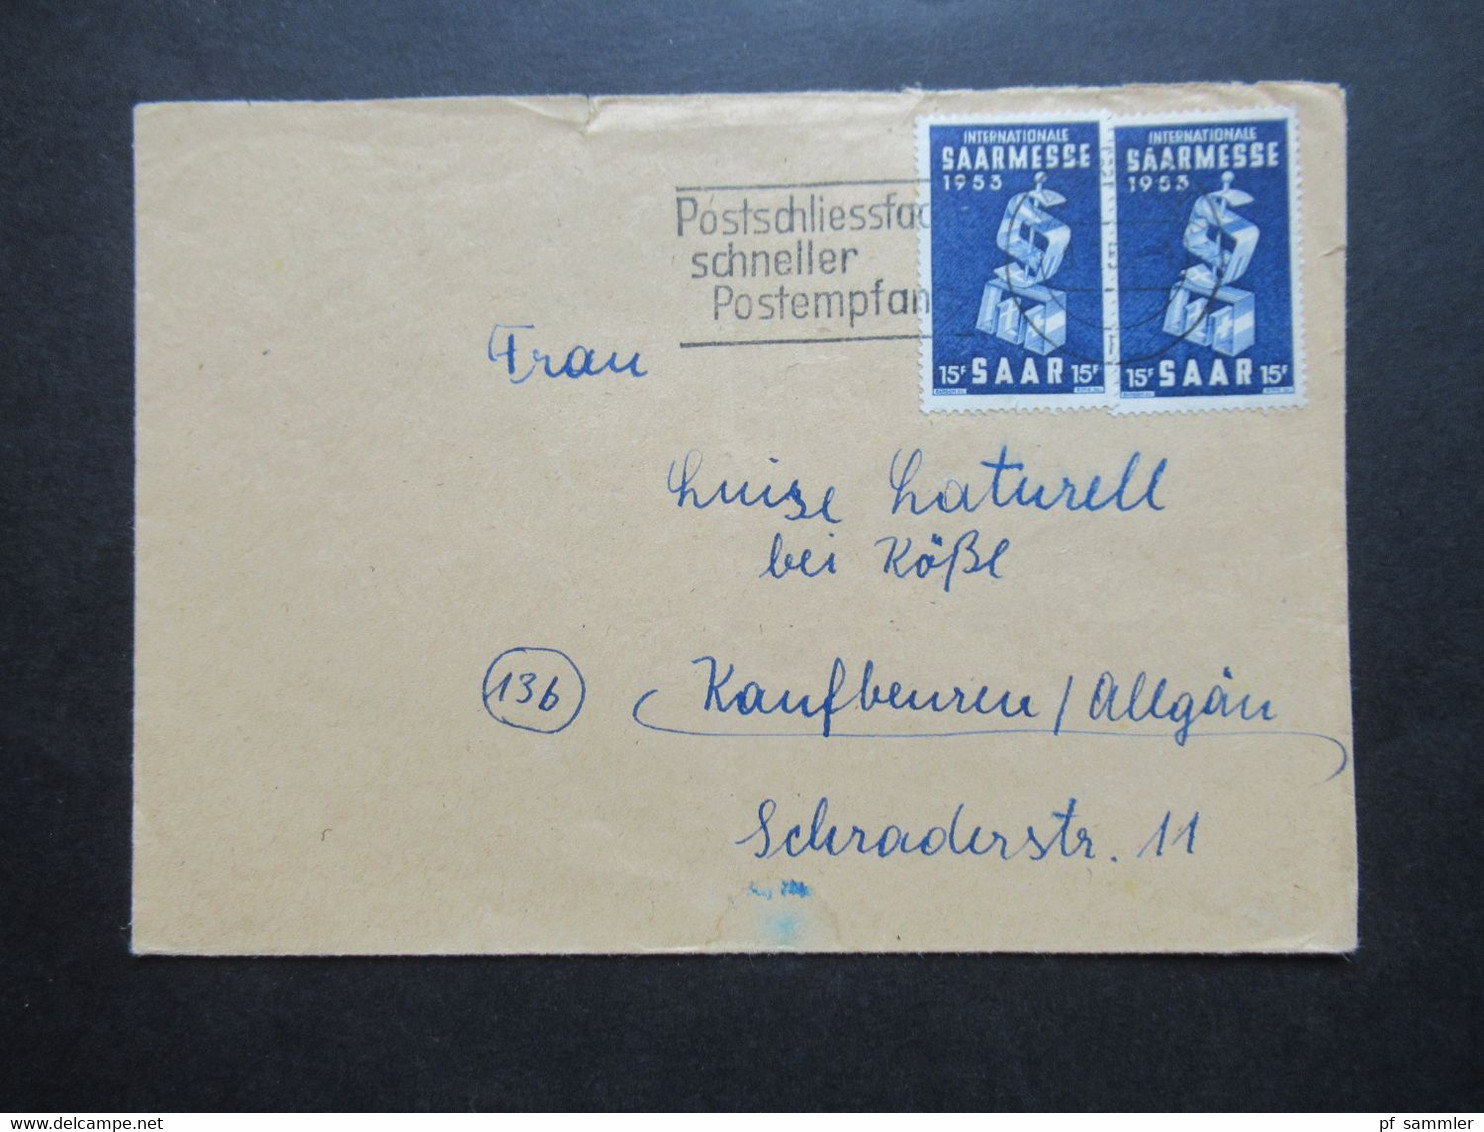 Saarland 1953 Nr.341 (2) MeF Internationale Saarmesse Werbestempel Postschliessfach Schneller Postempfang - Briefe U. Dokumente